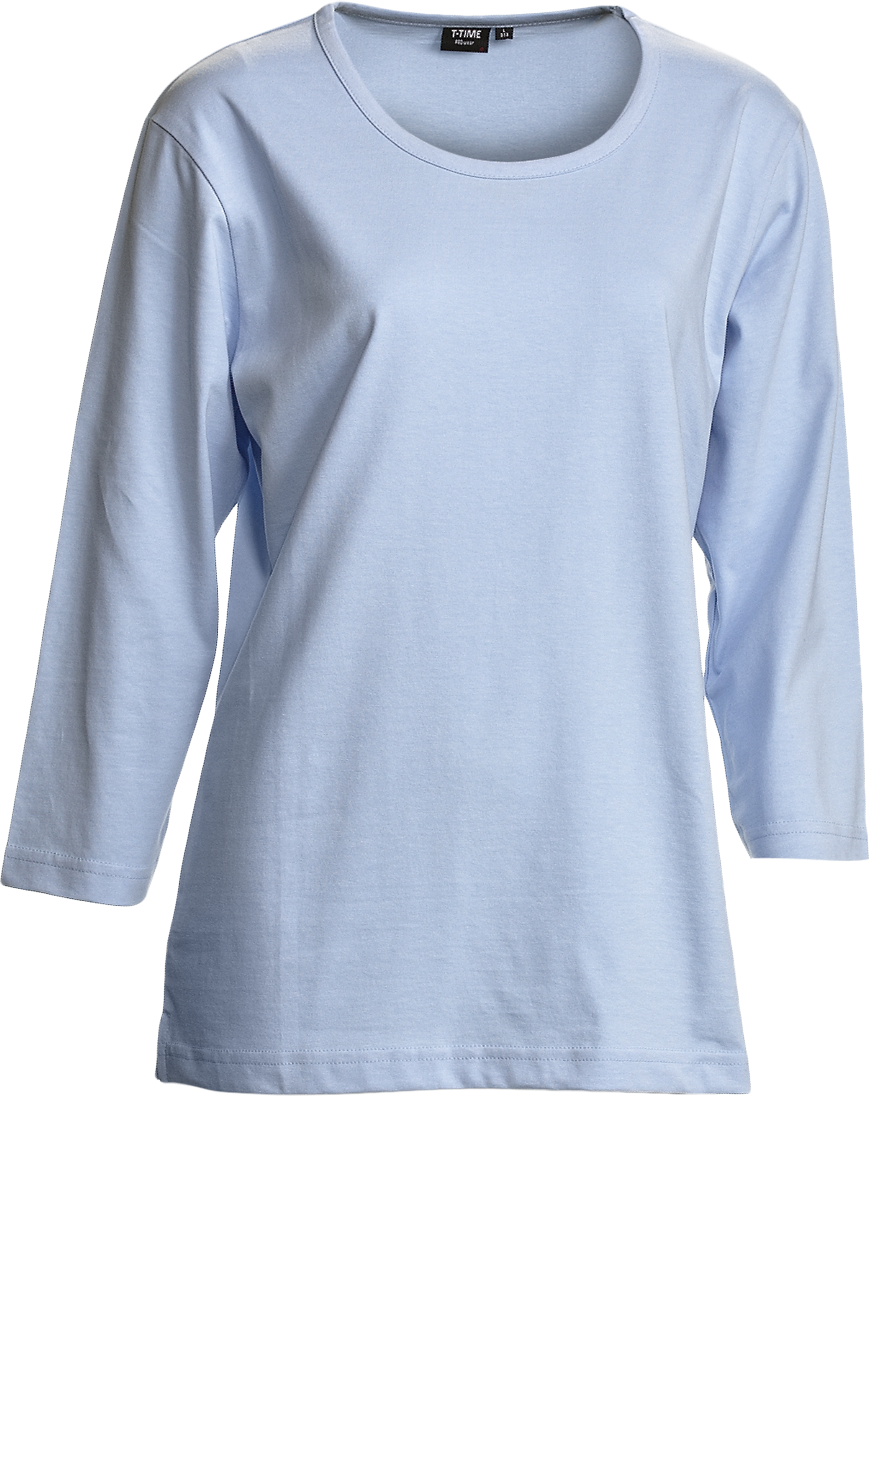 Hellblau Dame T-Shirt, Prowear (7150191)